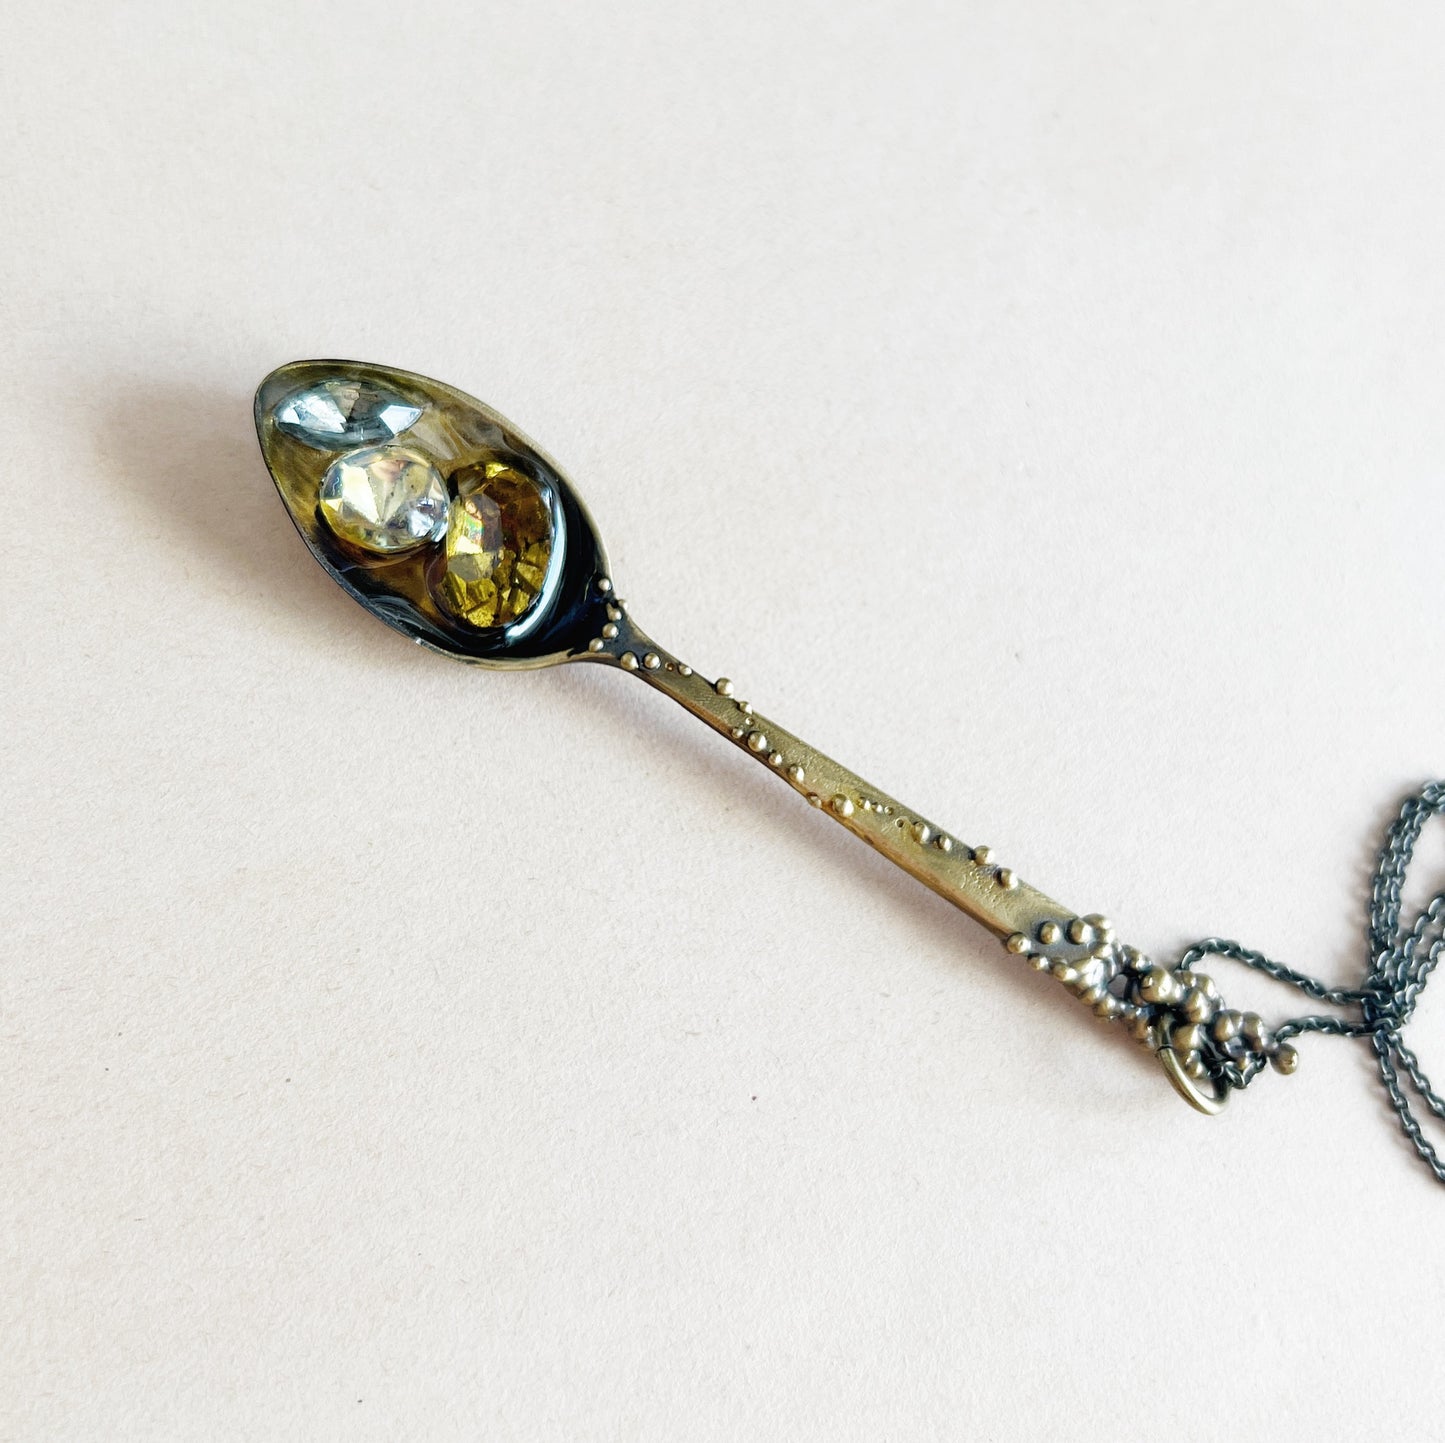 Spoon pendant